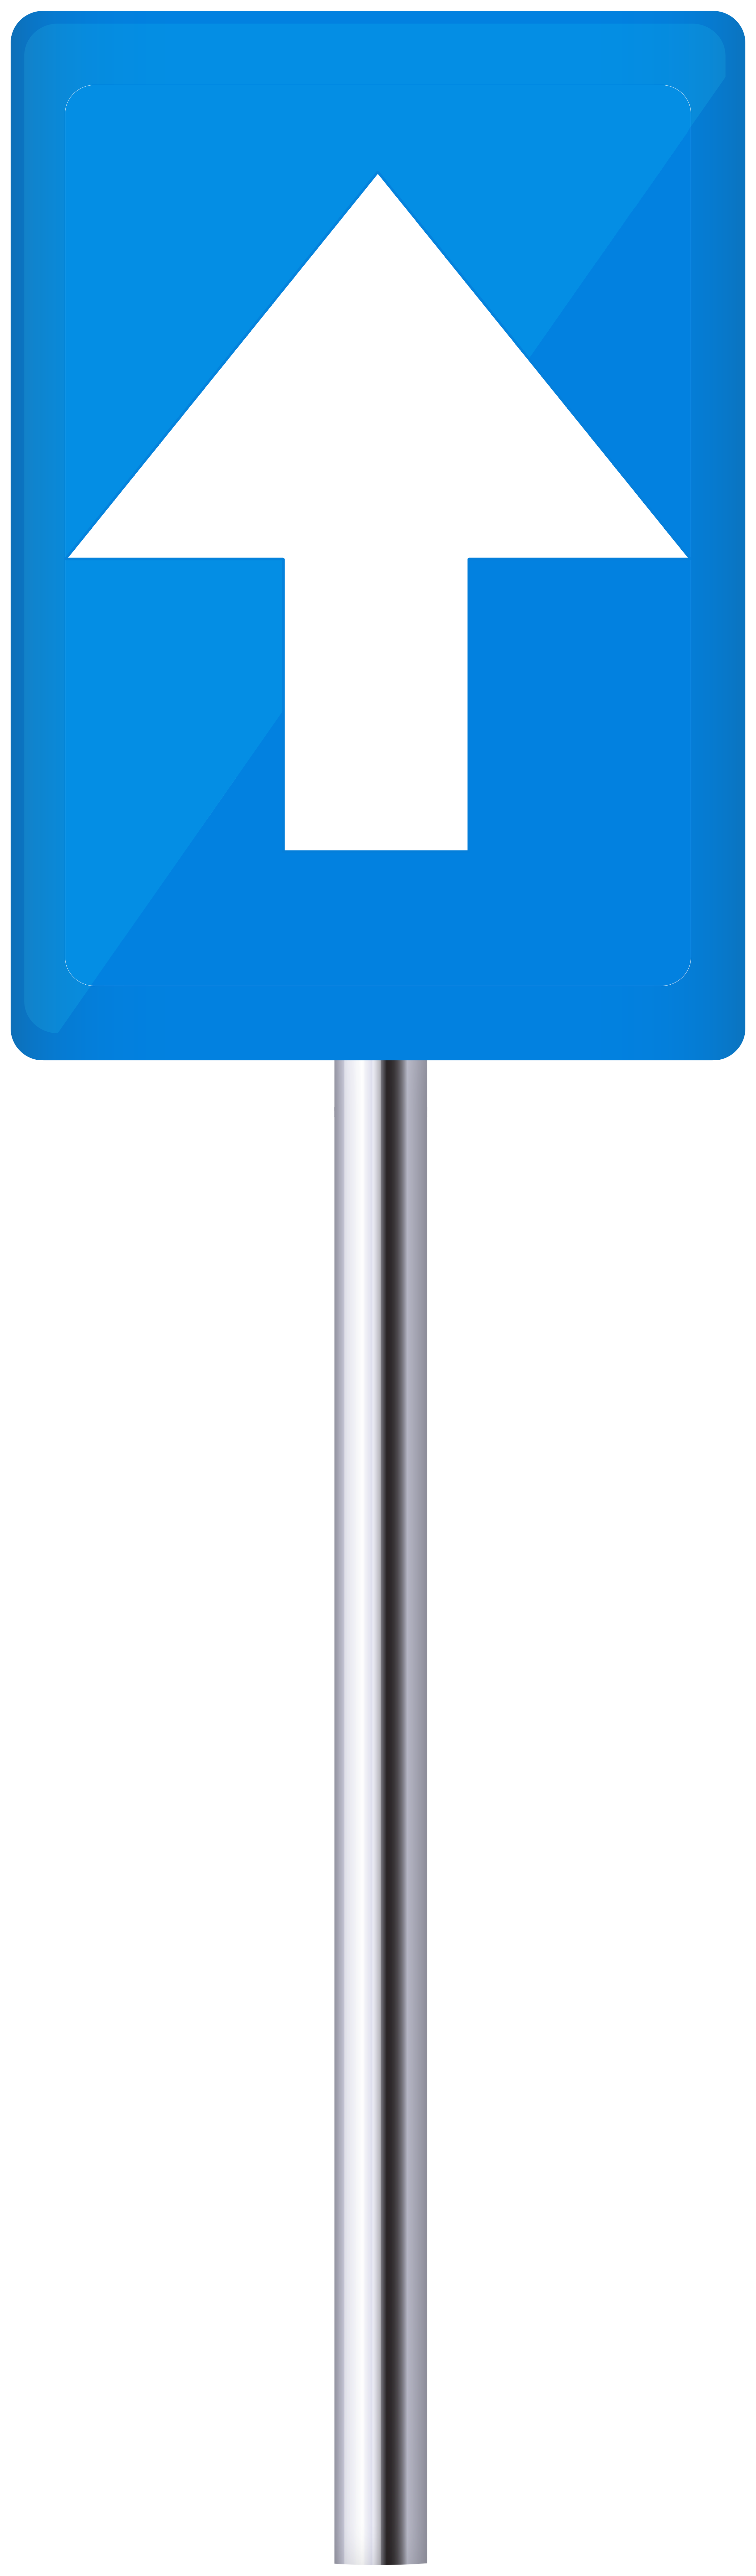 road sign clip art